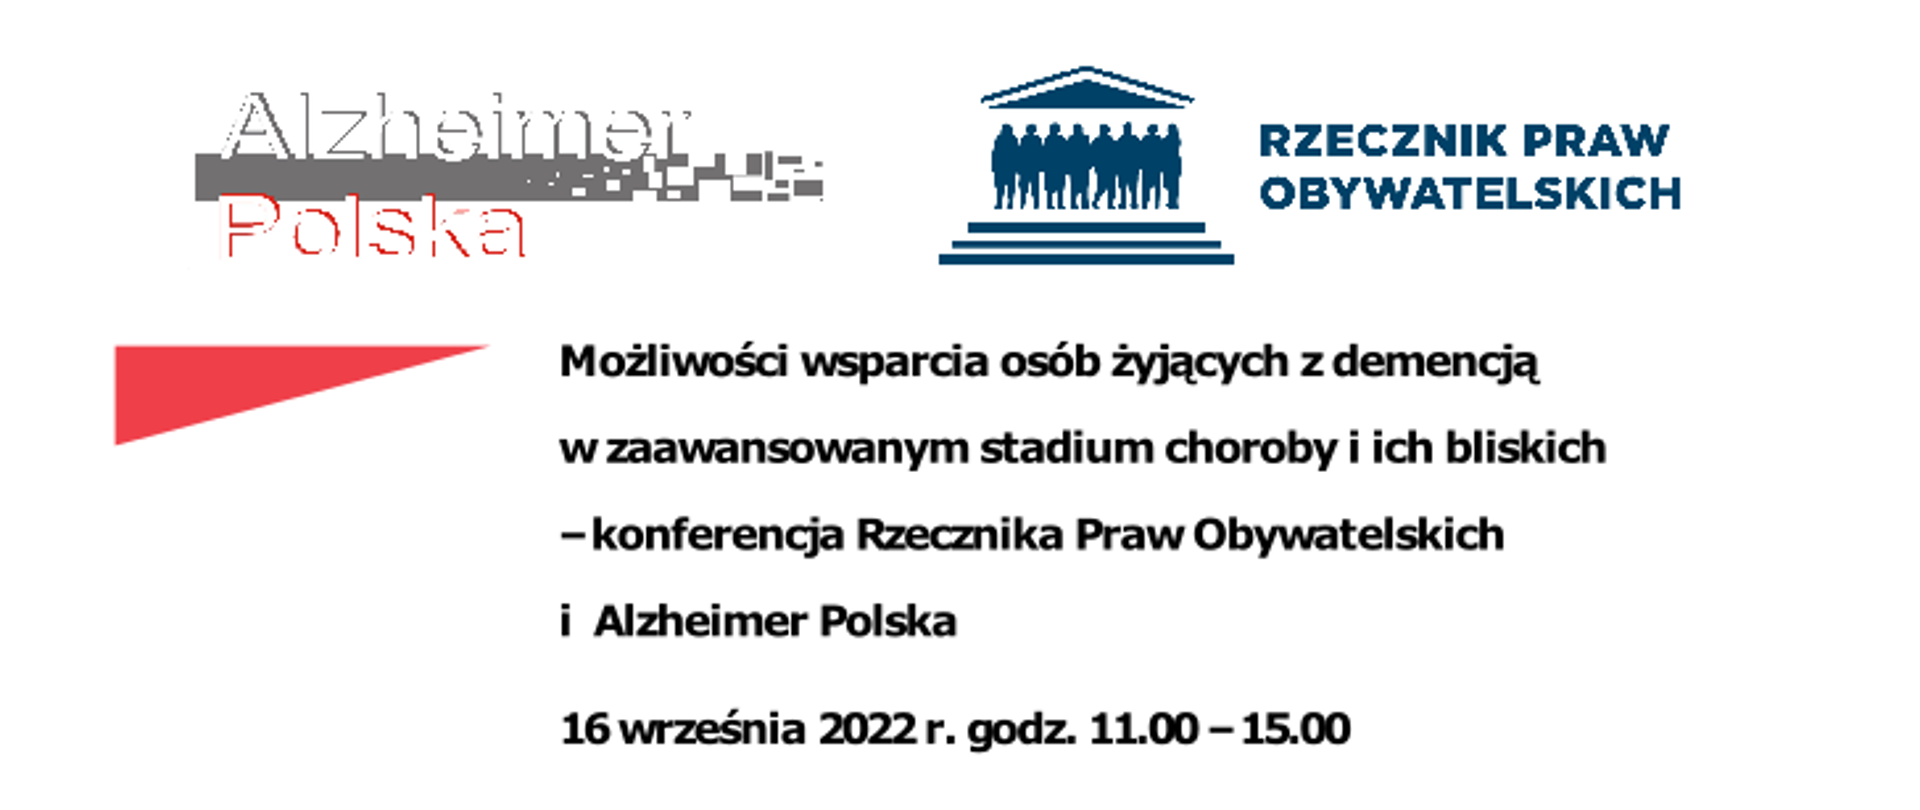 Grafika zaprasza do udziału w konferencji Rzecznika Praw Obywatelskich i Alzheimer Polska w dniu 16 września 2022 roku w godzinach 11:00 do 15:00